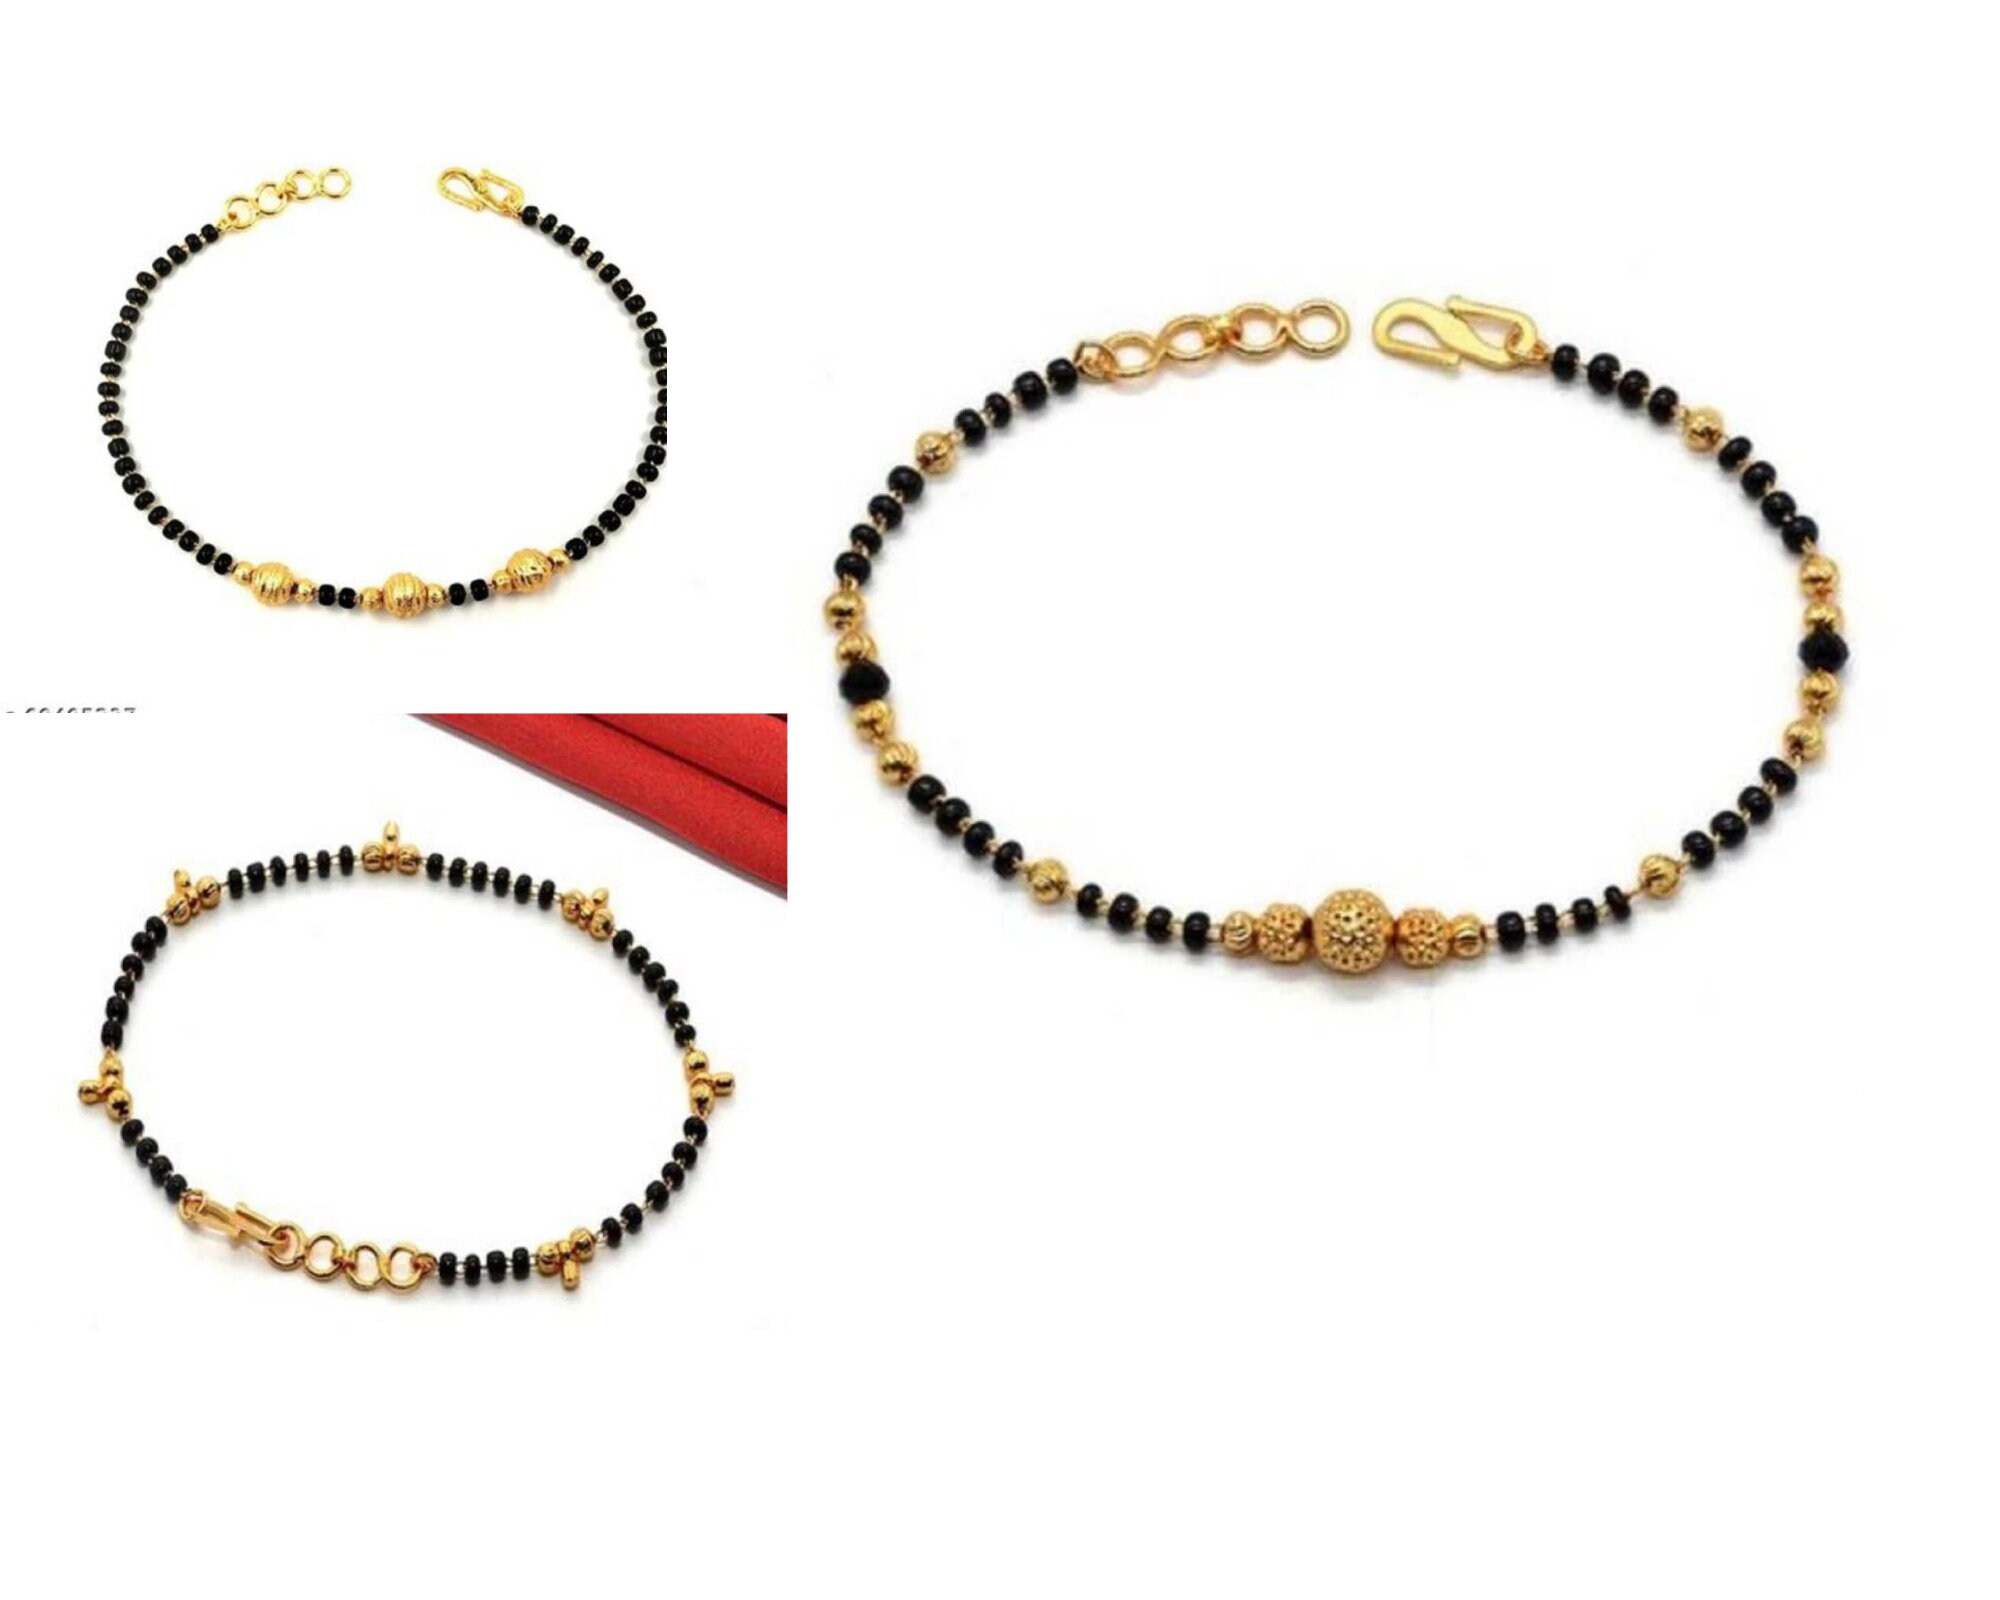 Small Gold Beads Black Beads Bracelet in 22k Gold, Bracelet for Women, Baby  Bracelet, All Size Available for Gift 